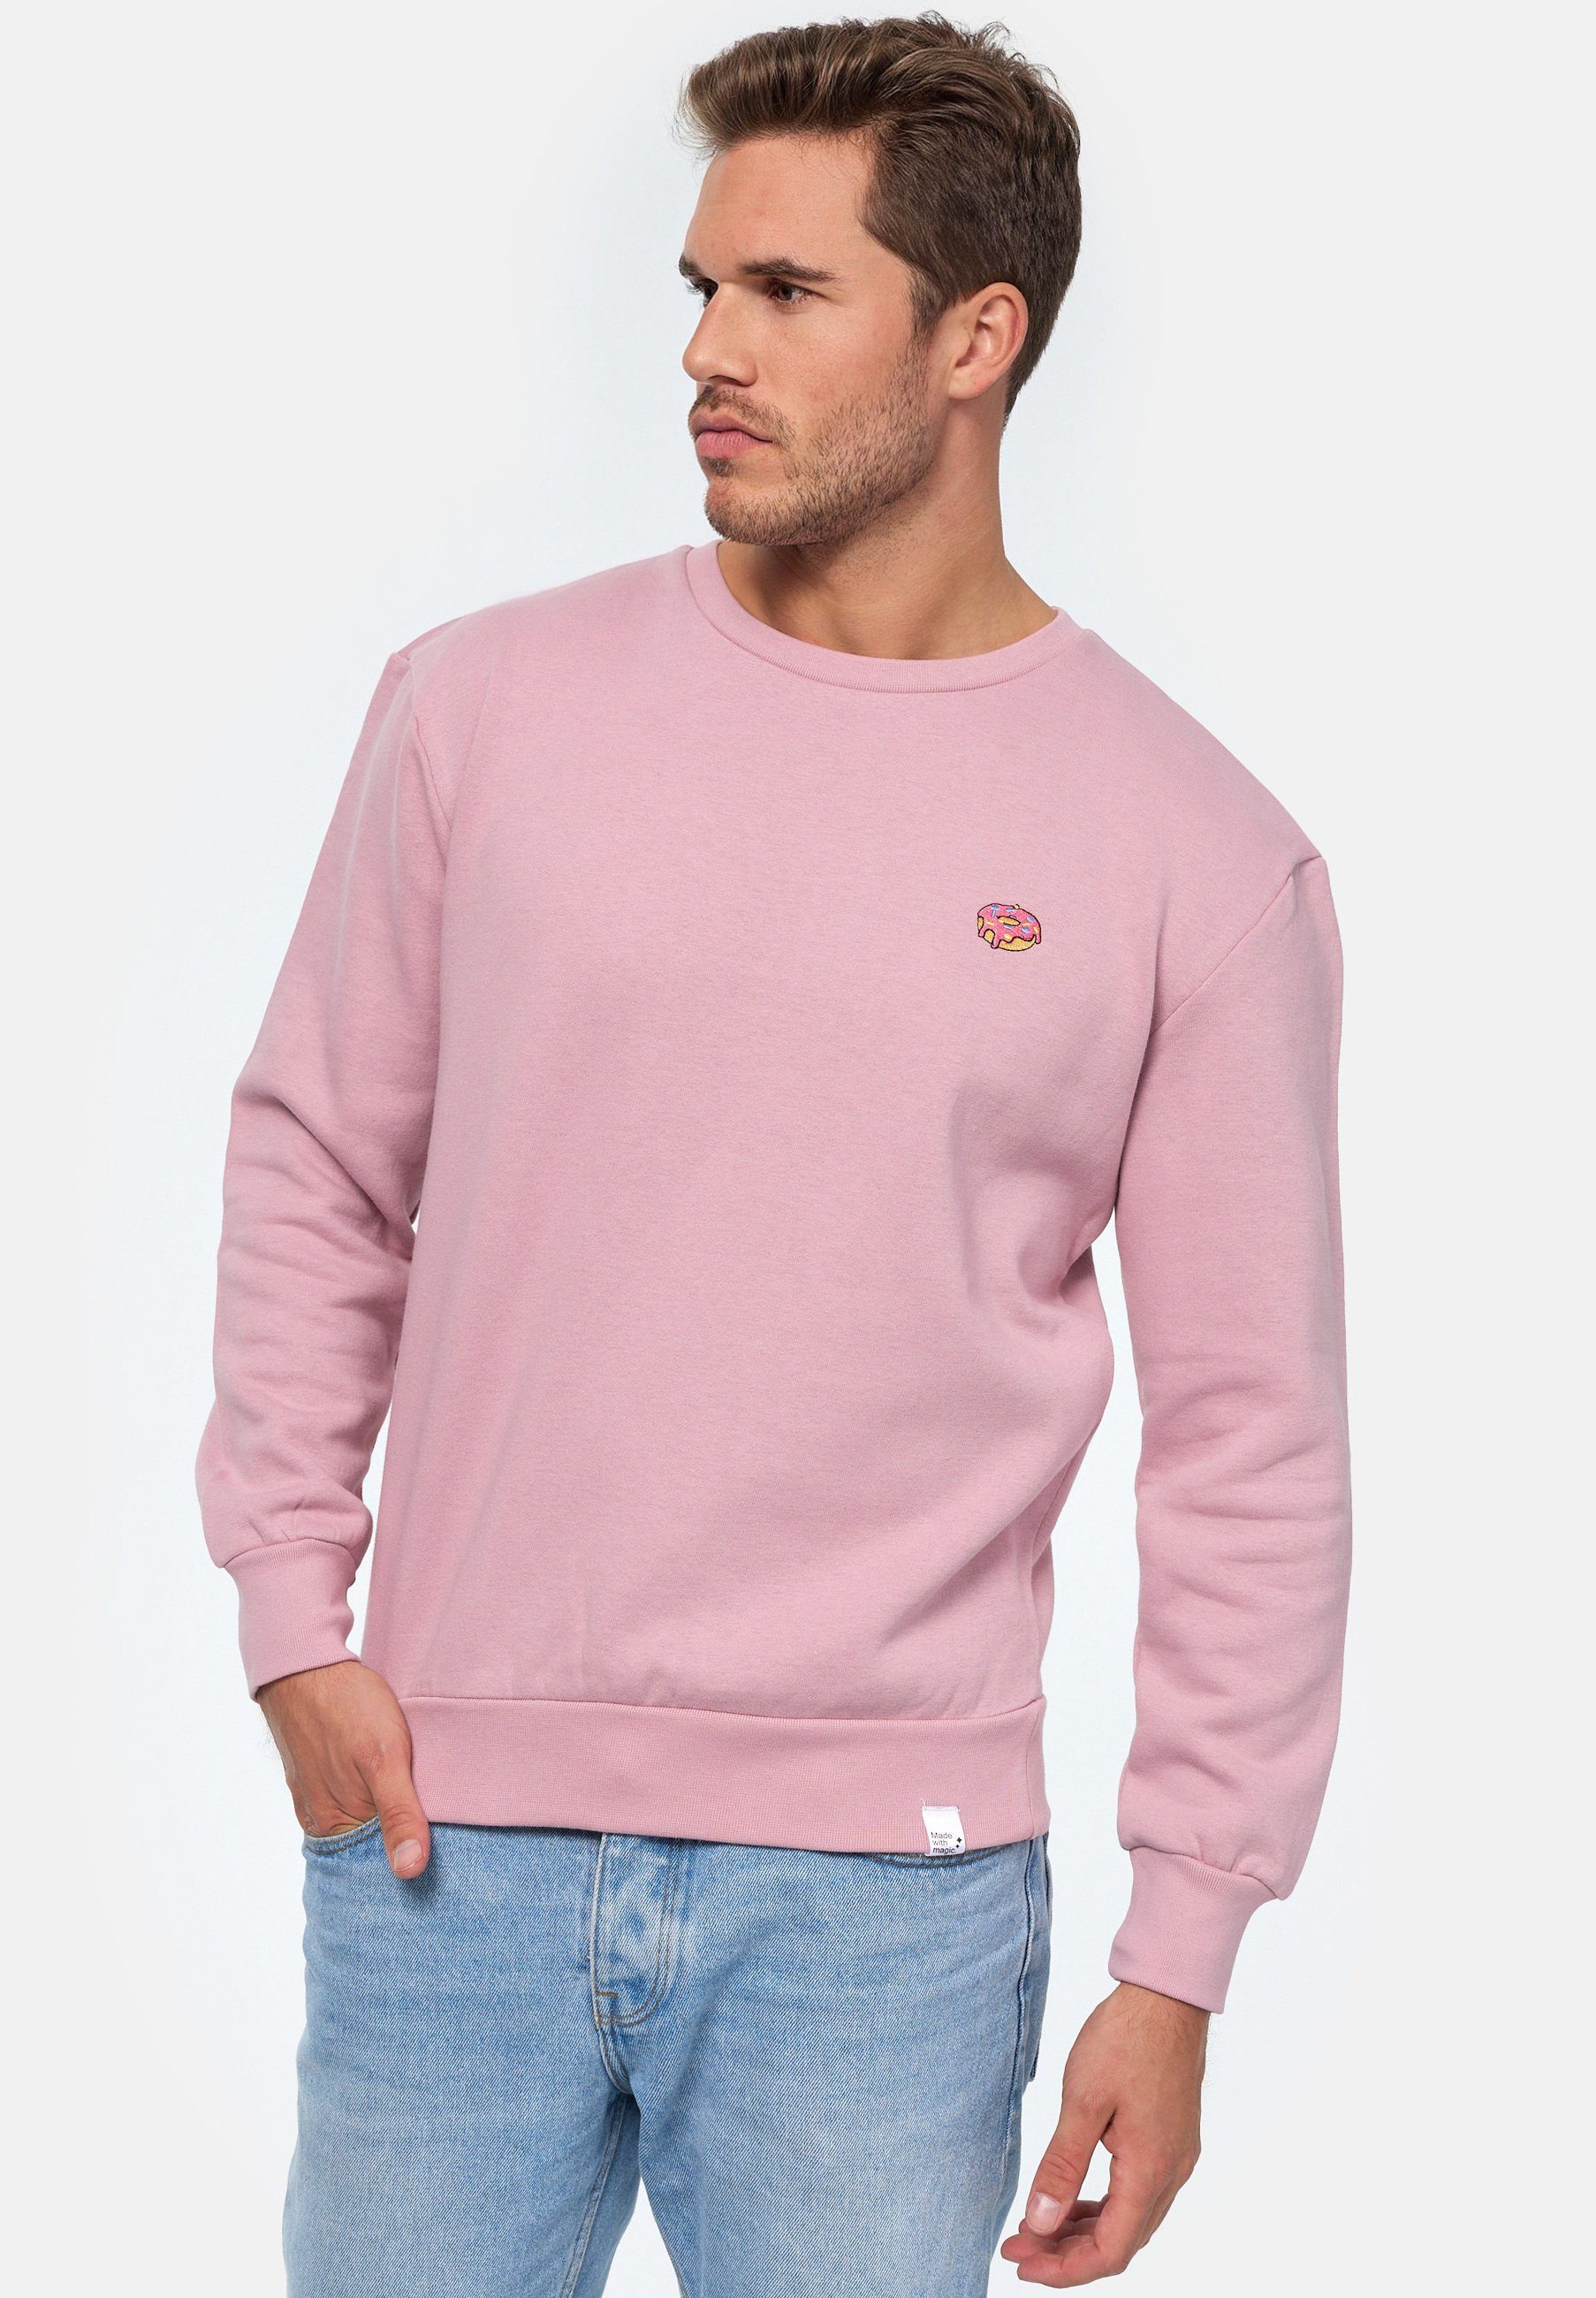 MIKON Donut Sweatshirt GOTS Pink zertifizierte Bio-Baumwolle